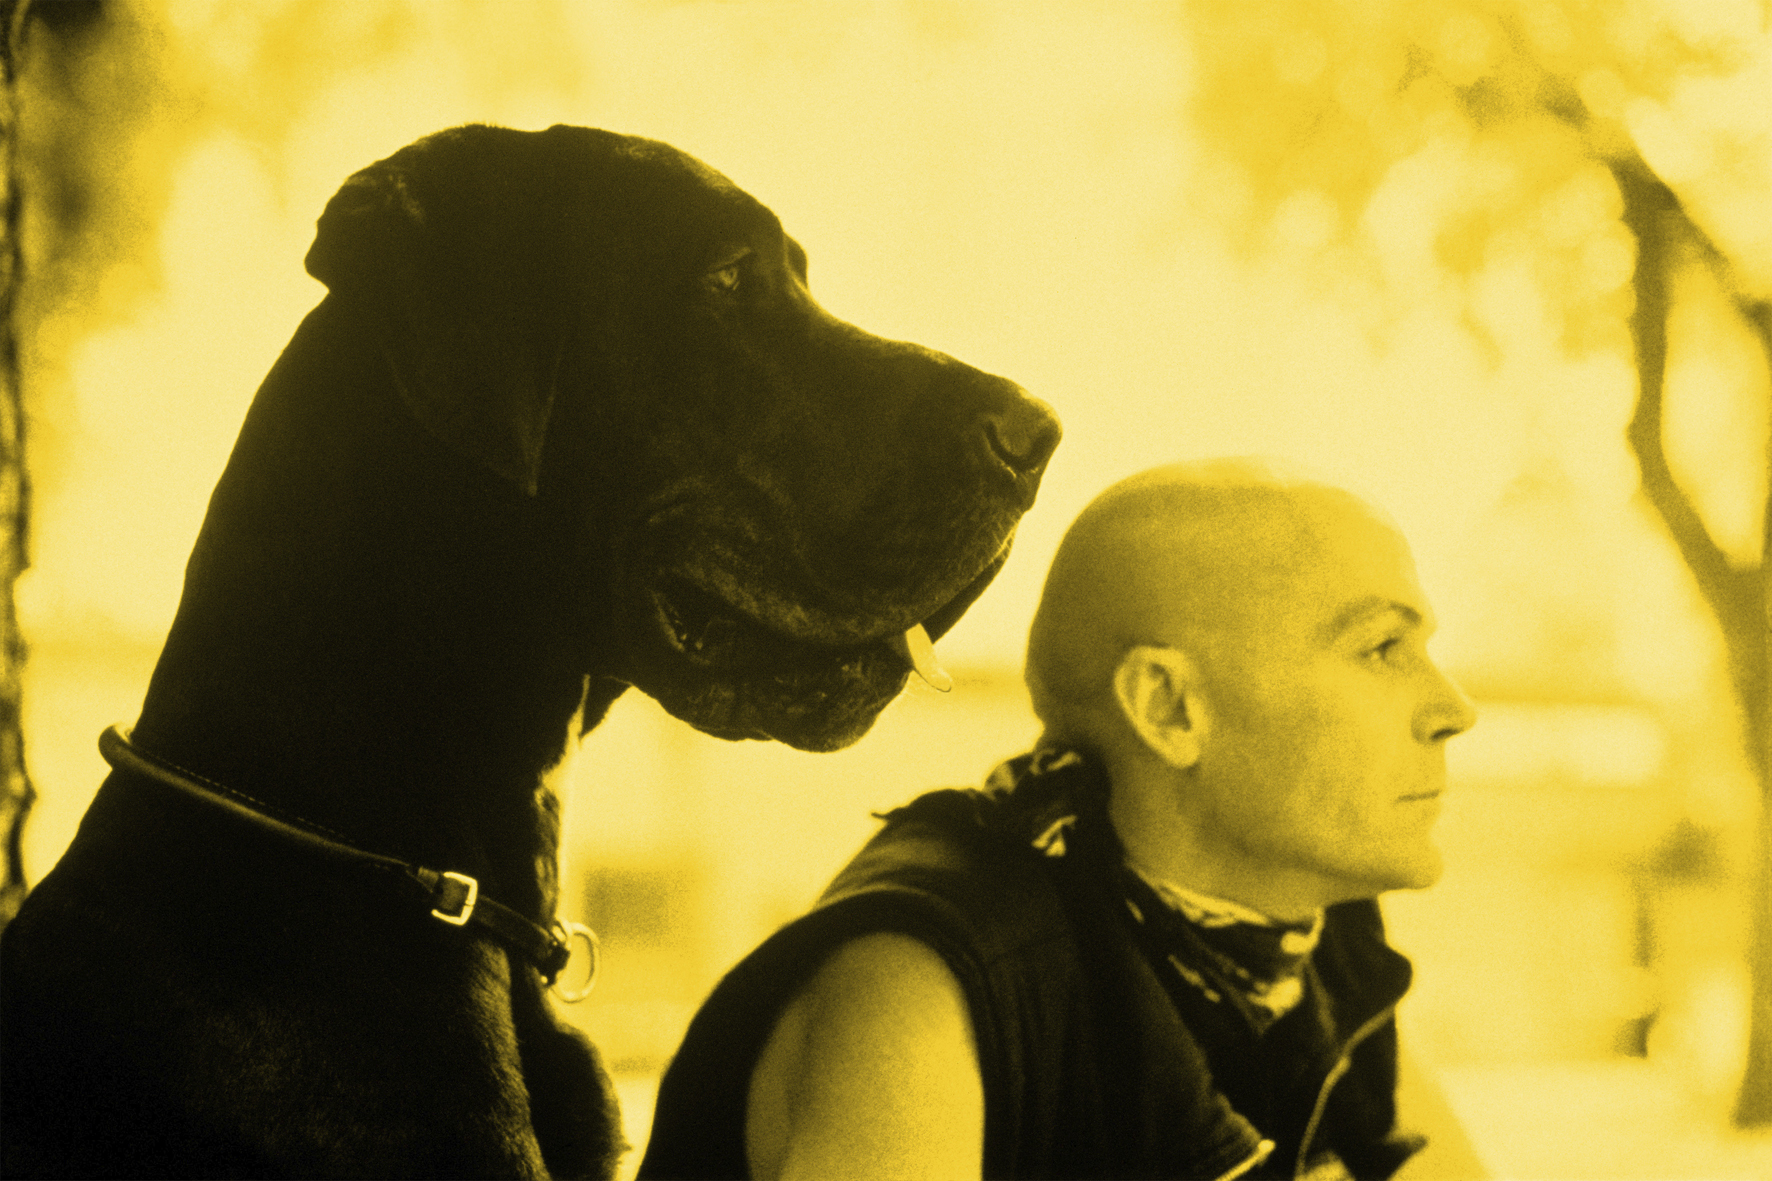 FLATZ: Zwei Champions oder Die Zukunft sieht rosig aus. FLATZ und der Hund Hitler, beide schauen nach rechts. © Atelier FLATZ